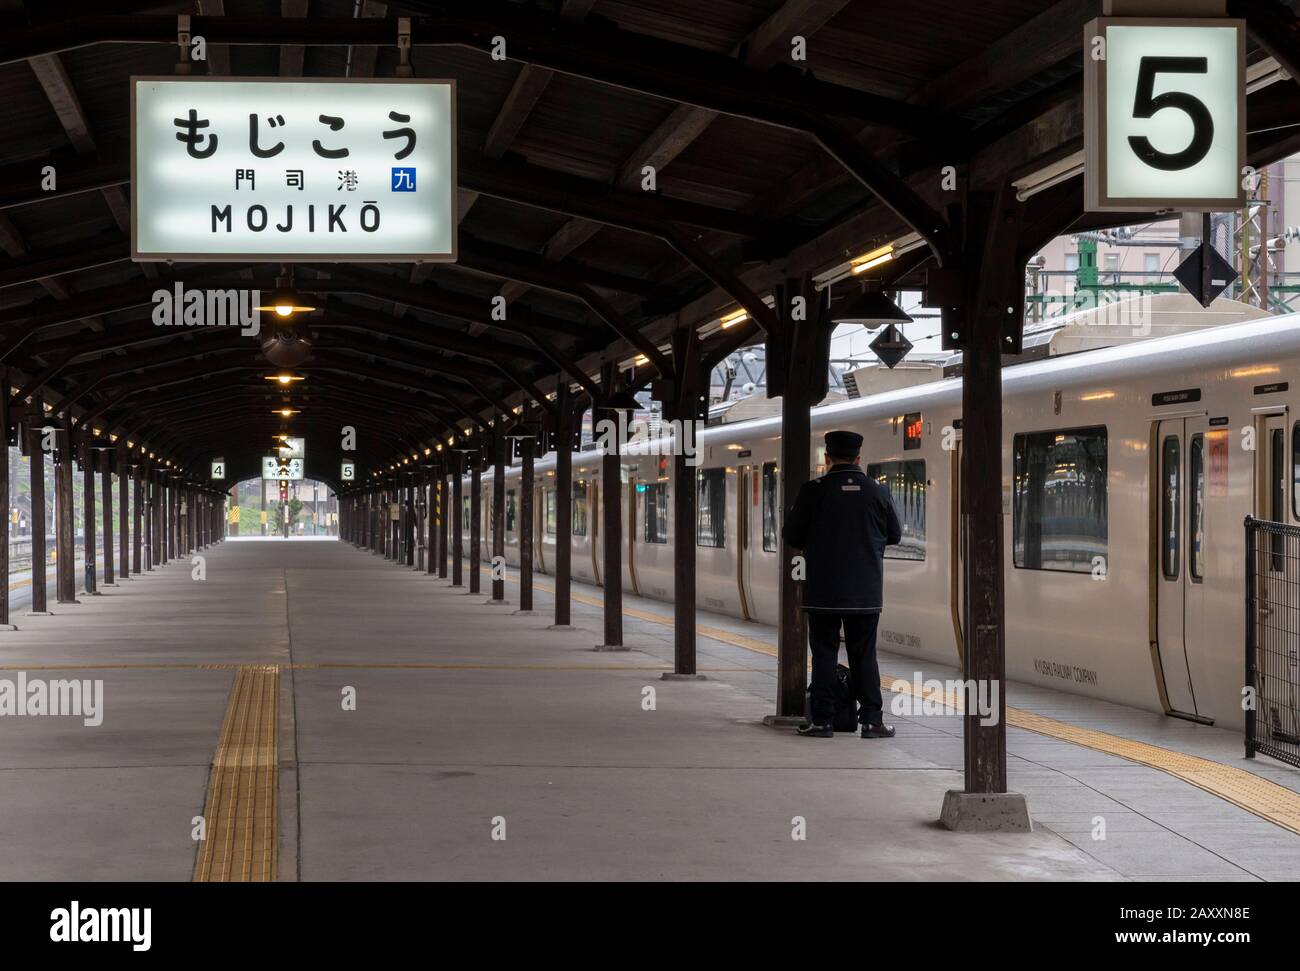 Piattaforma presso la stazione ferroviaria Mojiko di Kyushu a Kitakyushu, Giappone. Foto Stock